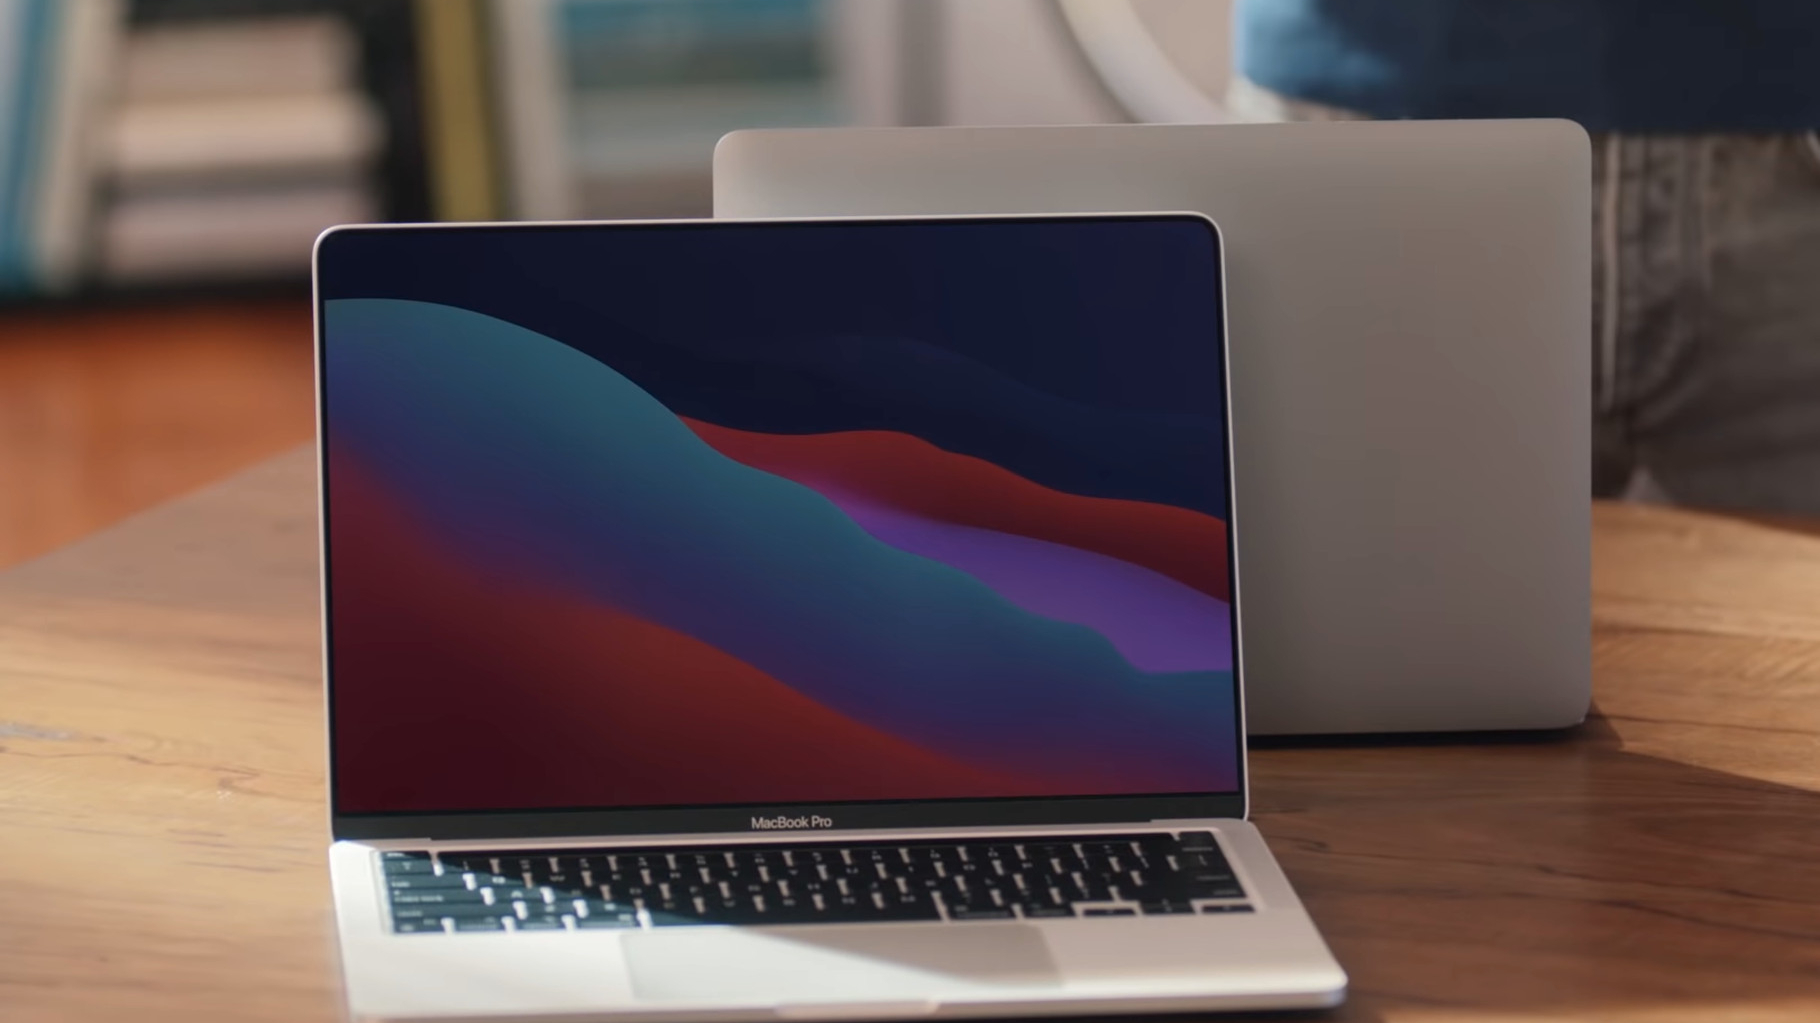 Reklame-Eigentor: Intel zeigt besseres MacBook Pro | heise online